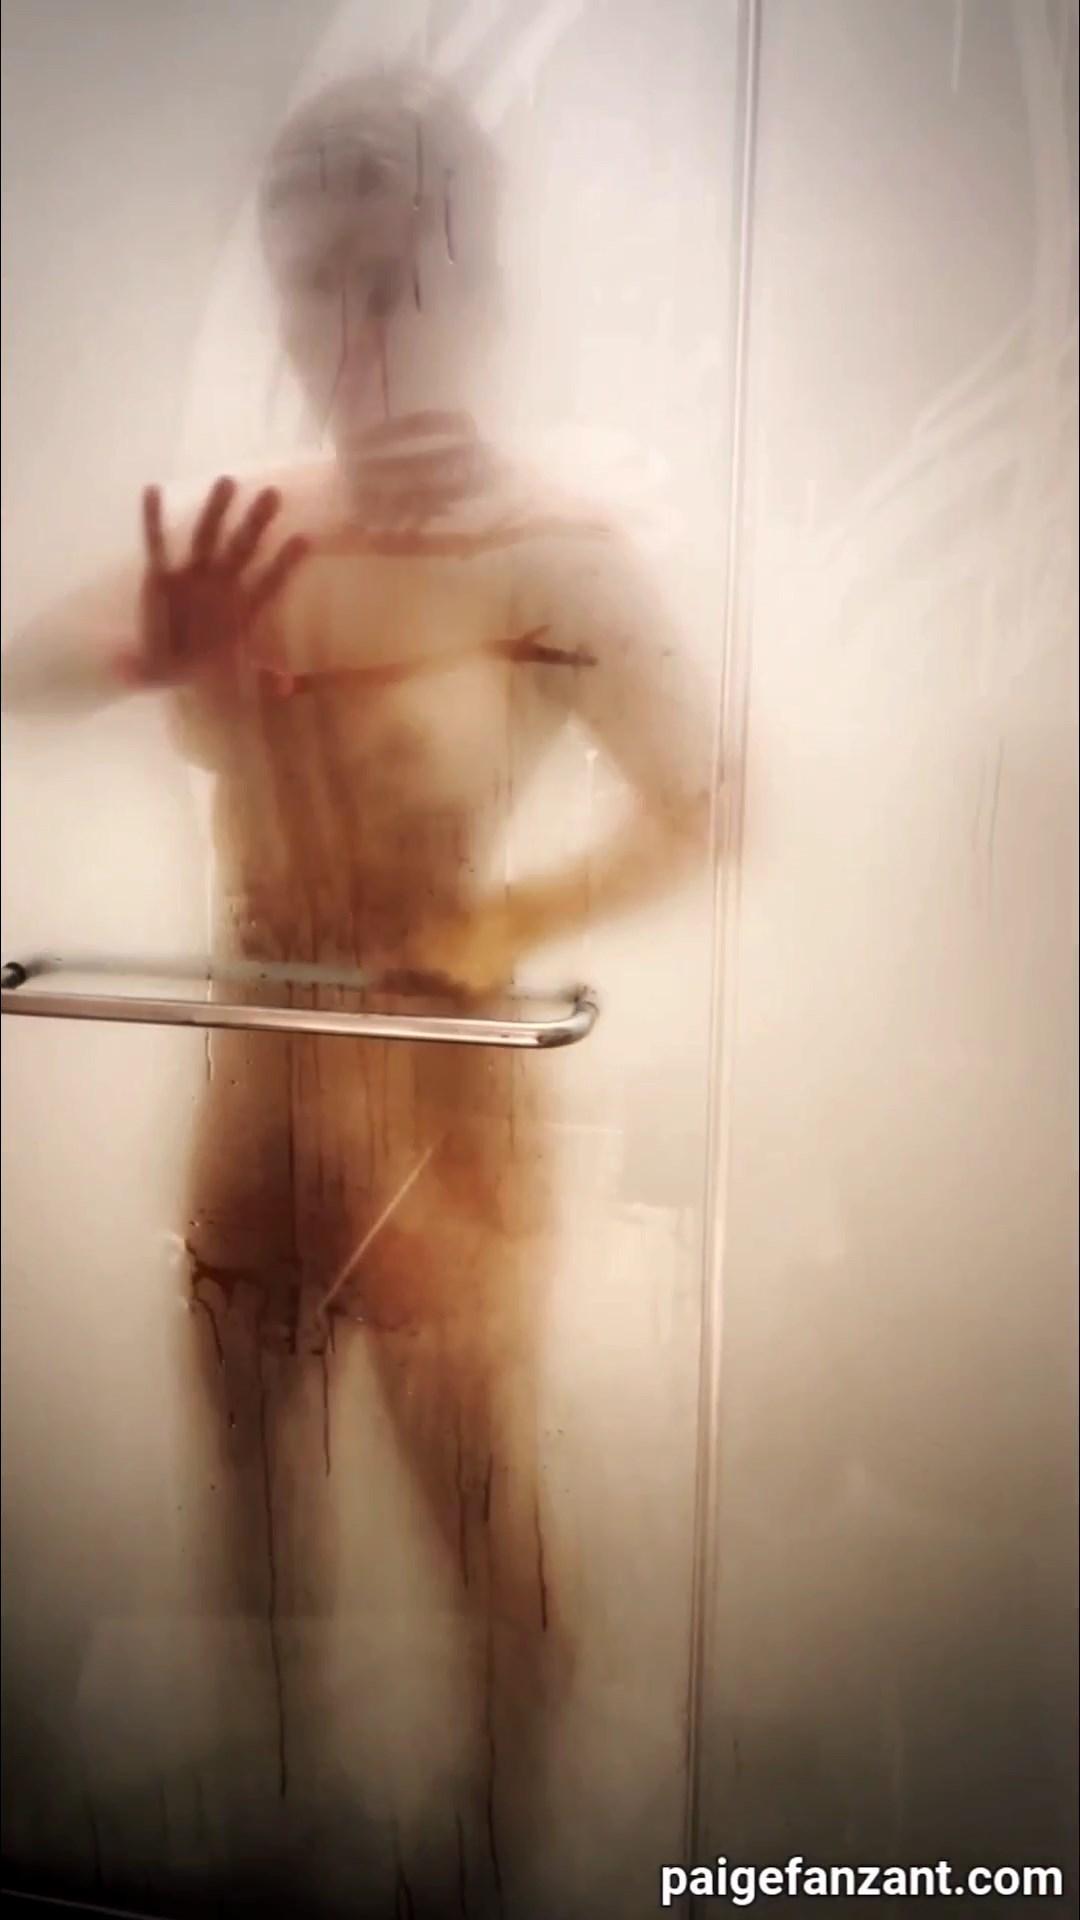 Paige VanZant Quick Shower Nude Voyeur Video Leaked